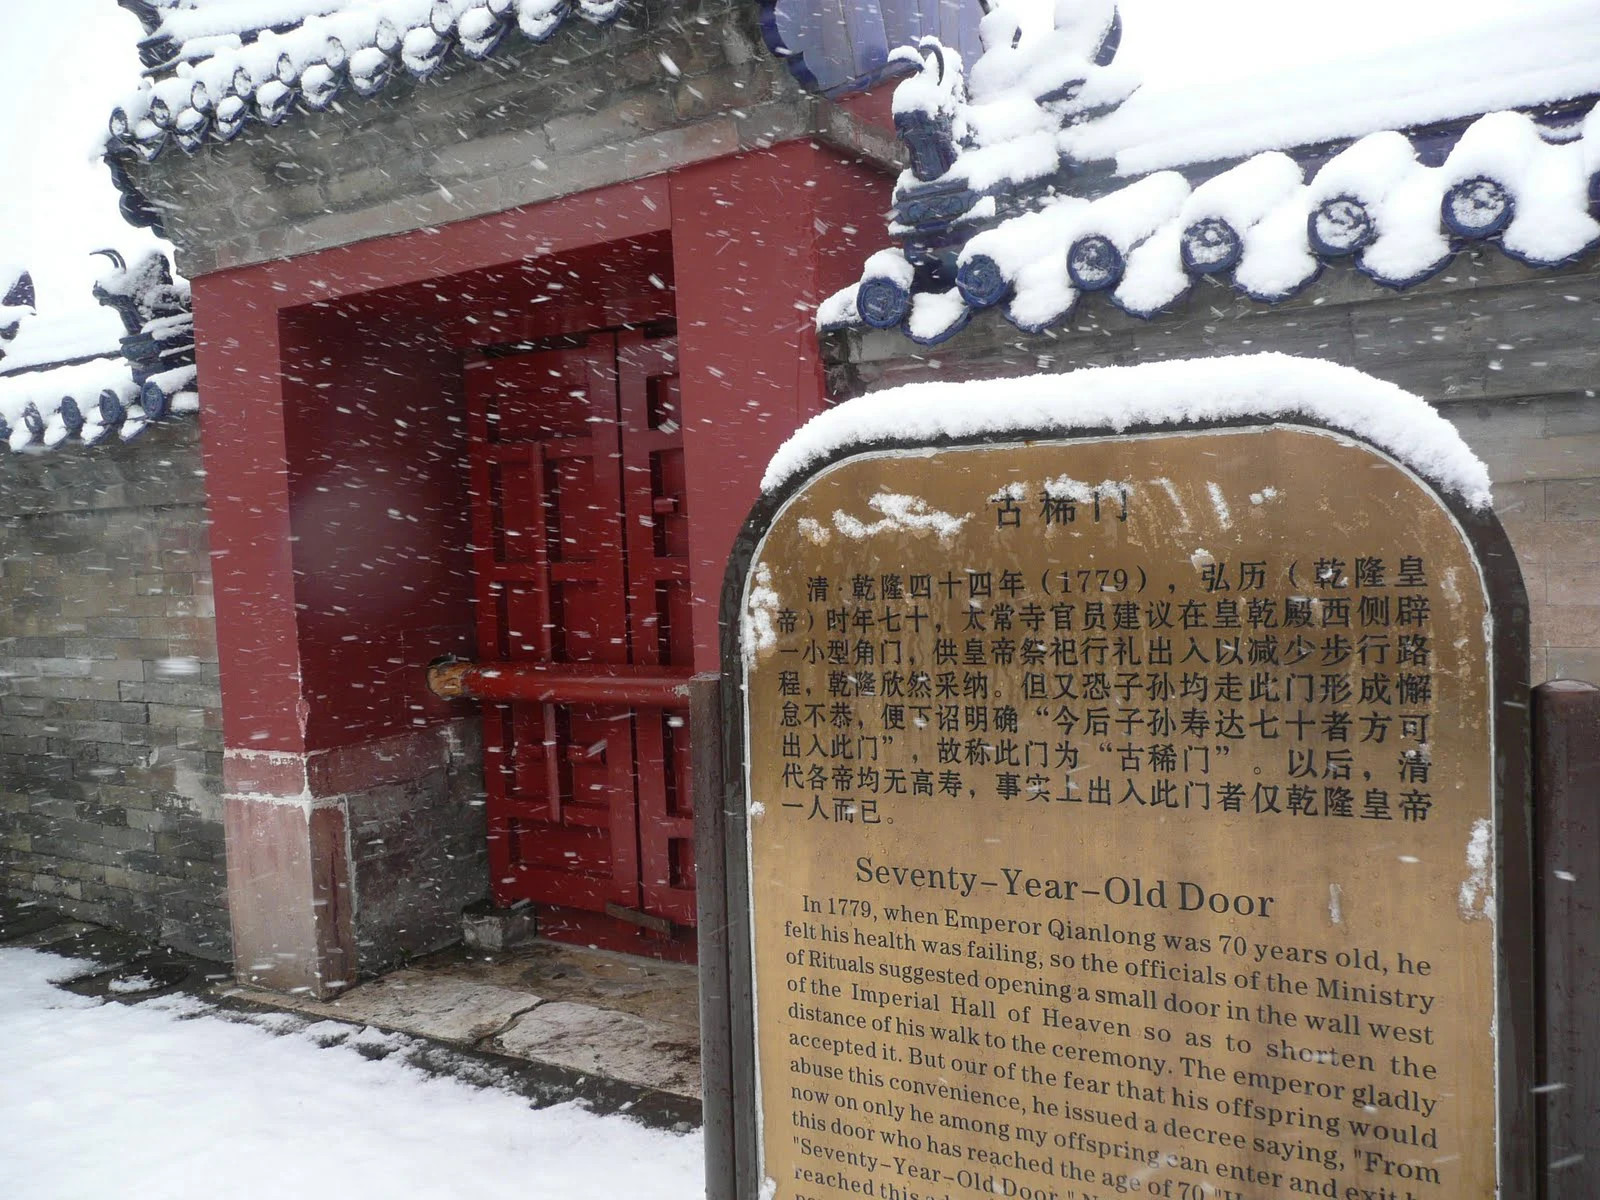 Cánh cửa đặc biệt chạm khắc 3 chữ trong Tử Cẩm Thành suốt 100 năm chỉ 1 người bước qua - ảnh 4